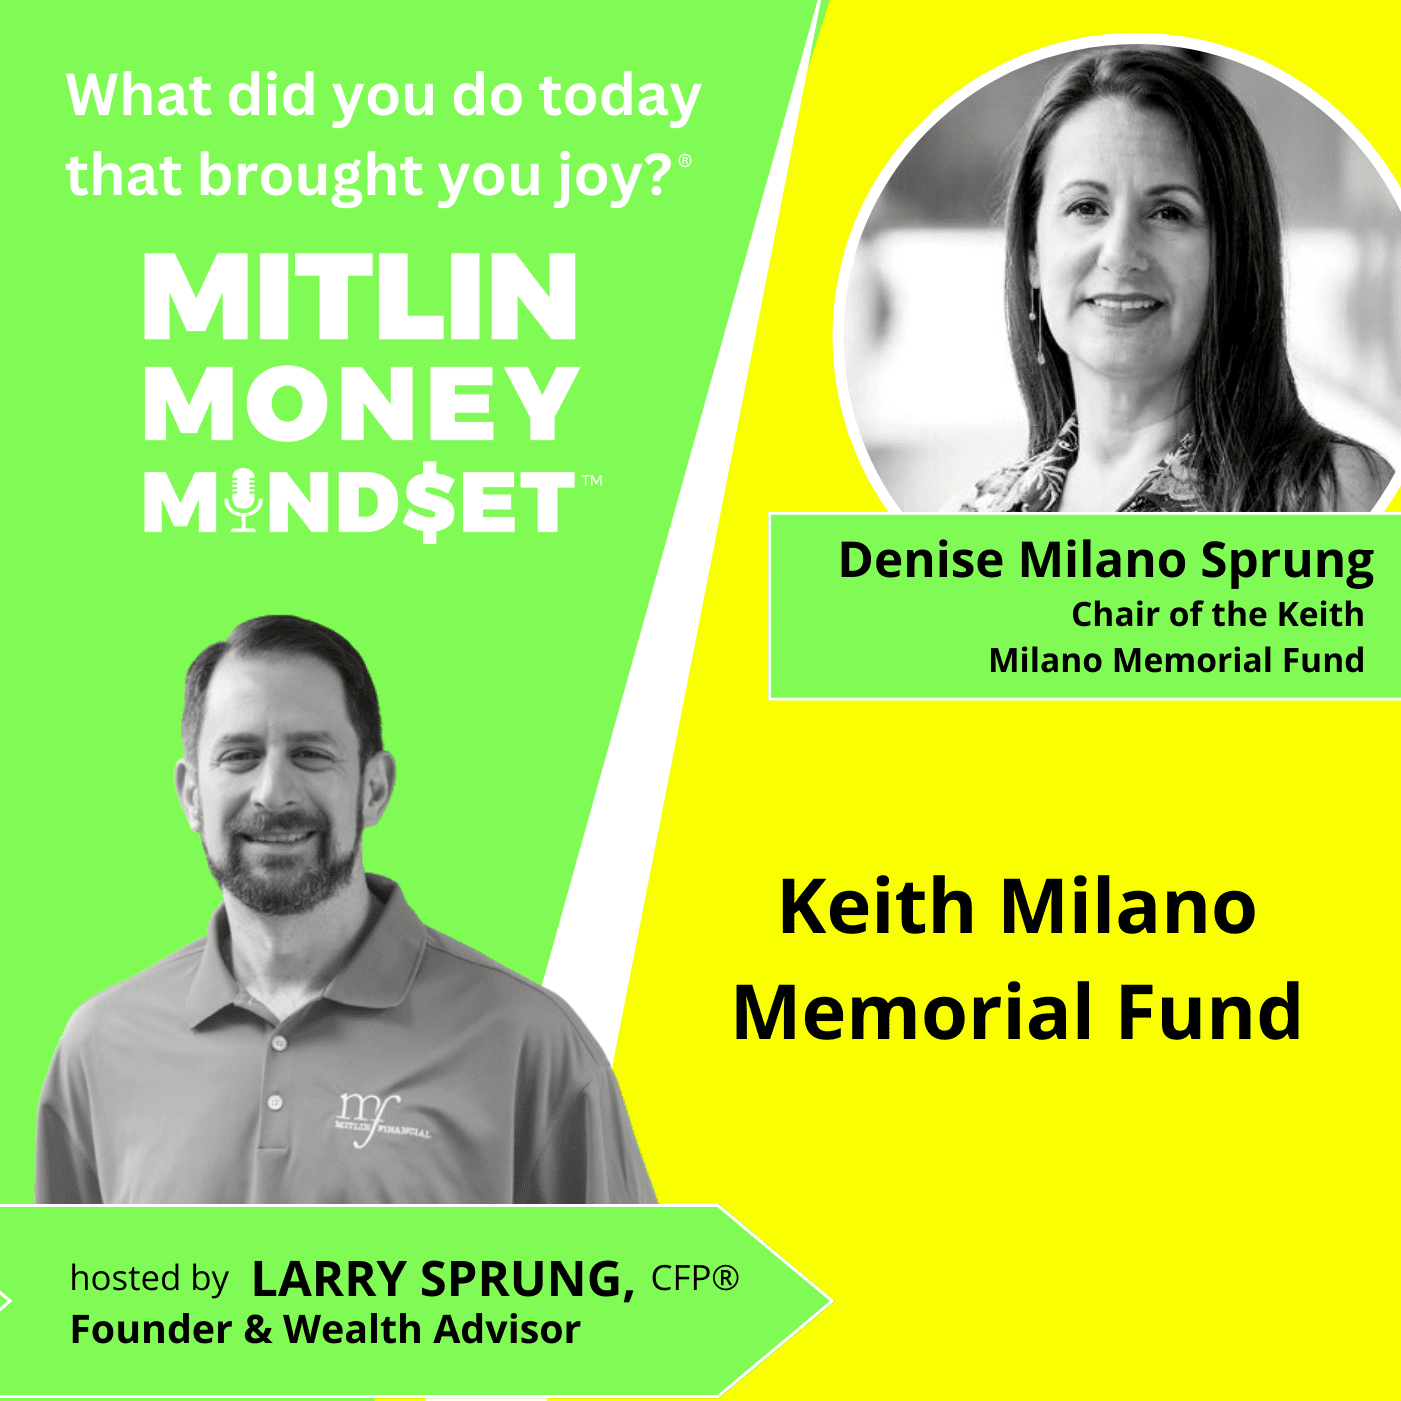 Keith Milano Memorial Fund